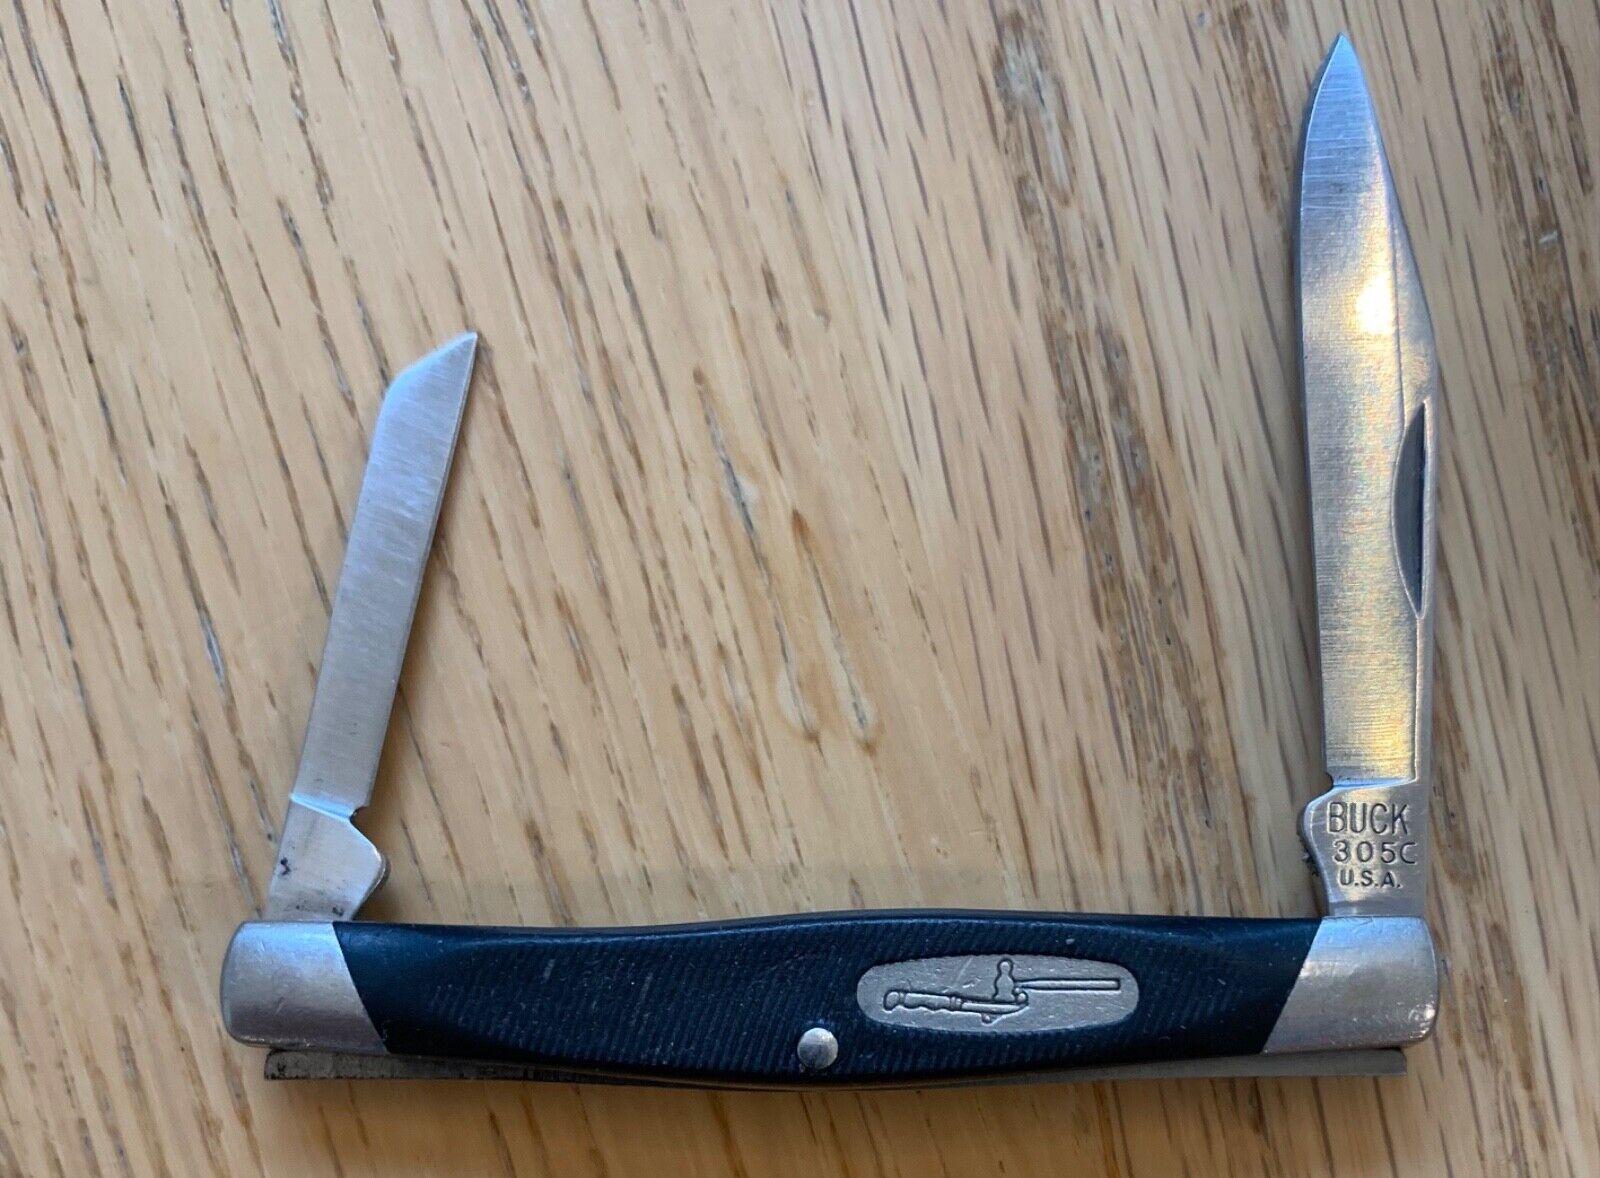 BUCK 305 LANCER KNIFE USED  ZB